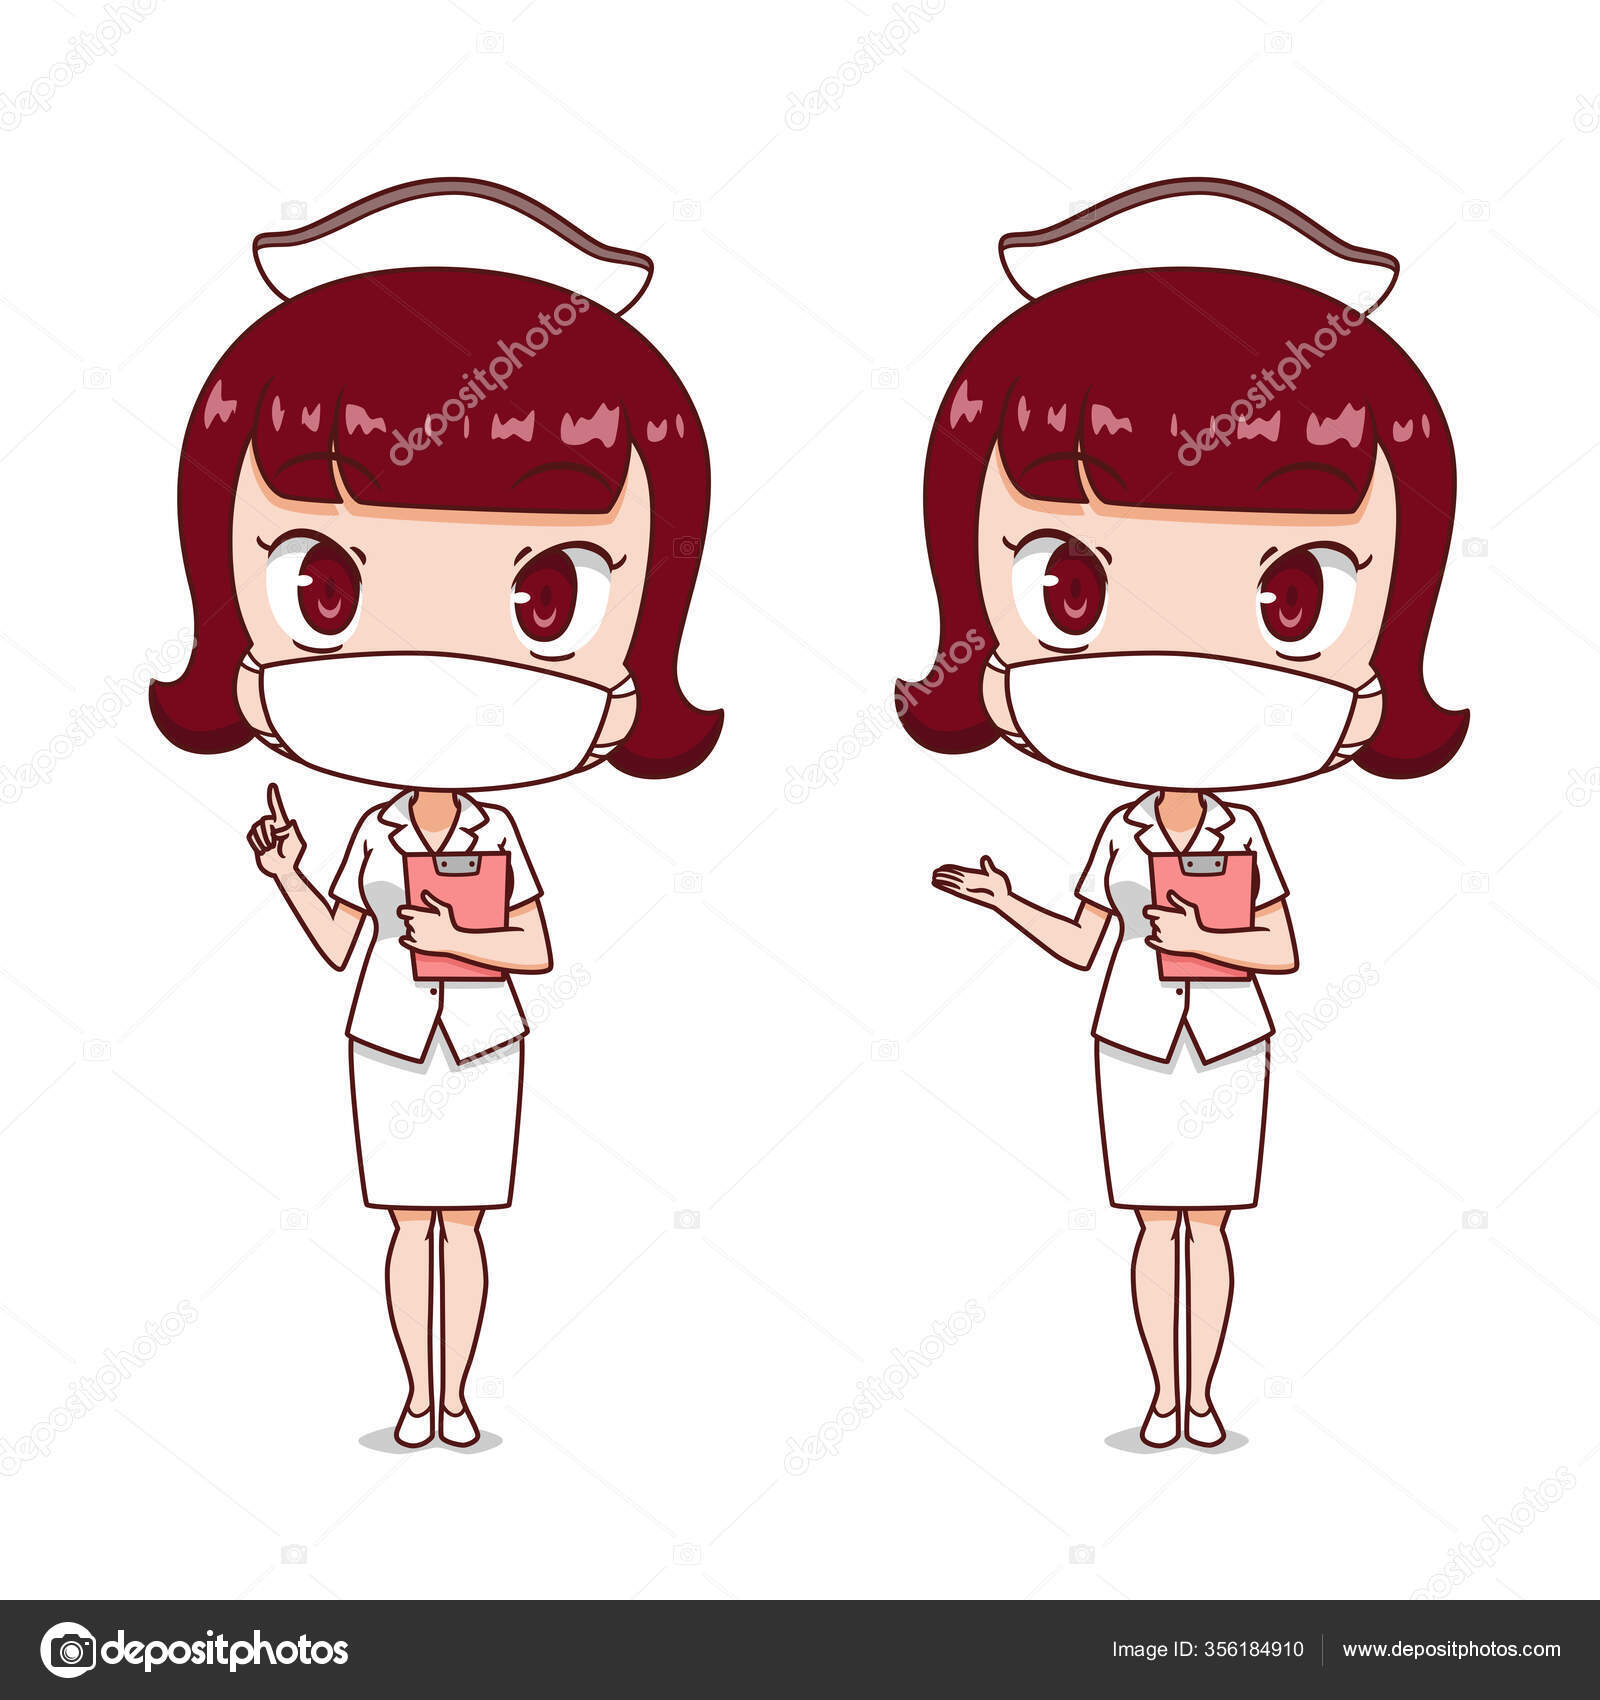 Desenho de uma enfermeira usando uma máscara